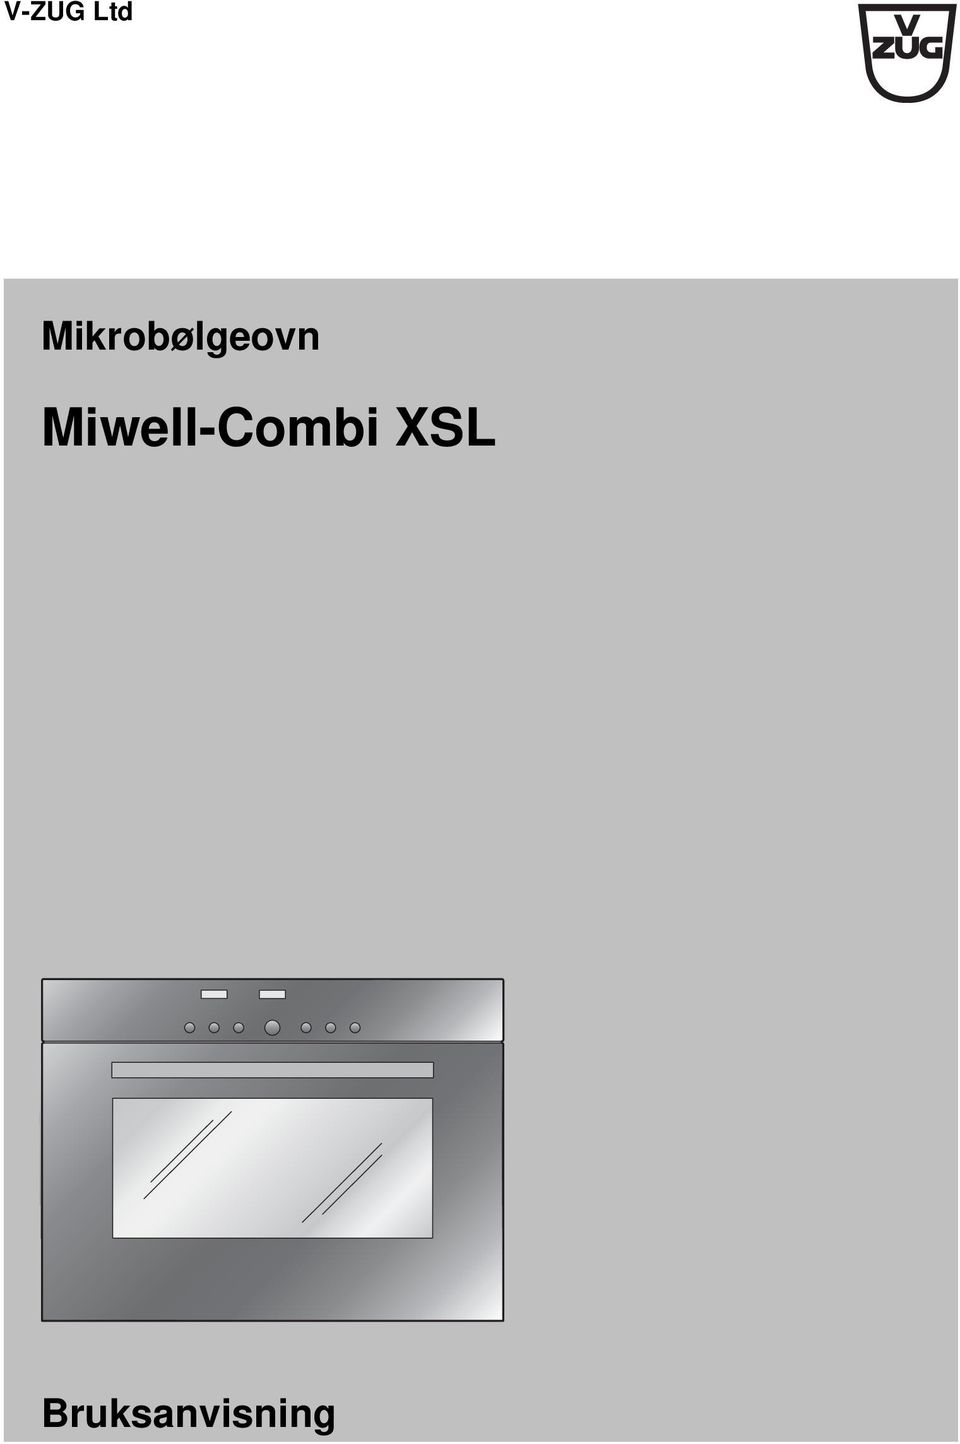 Miwell-Combi